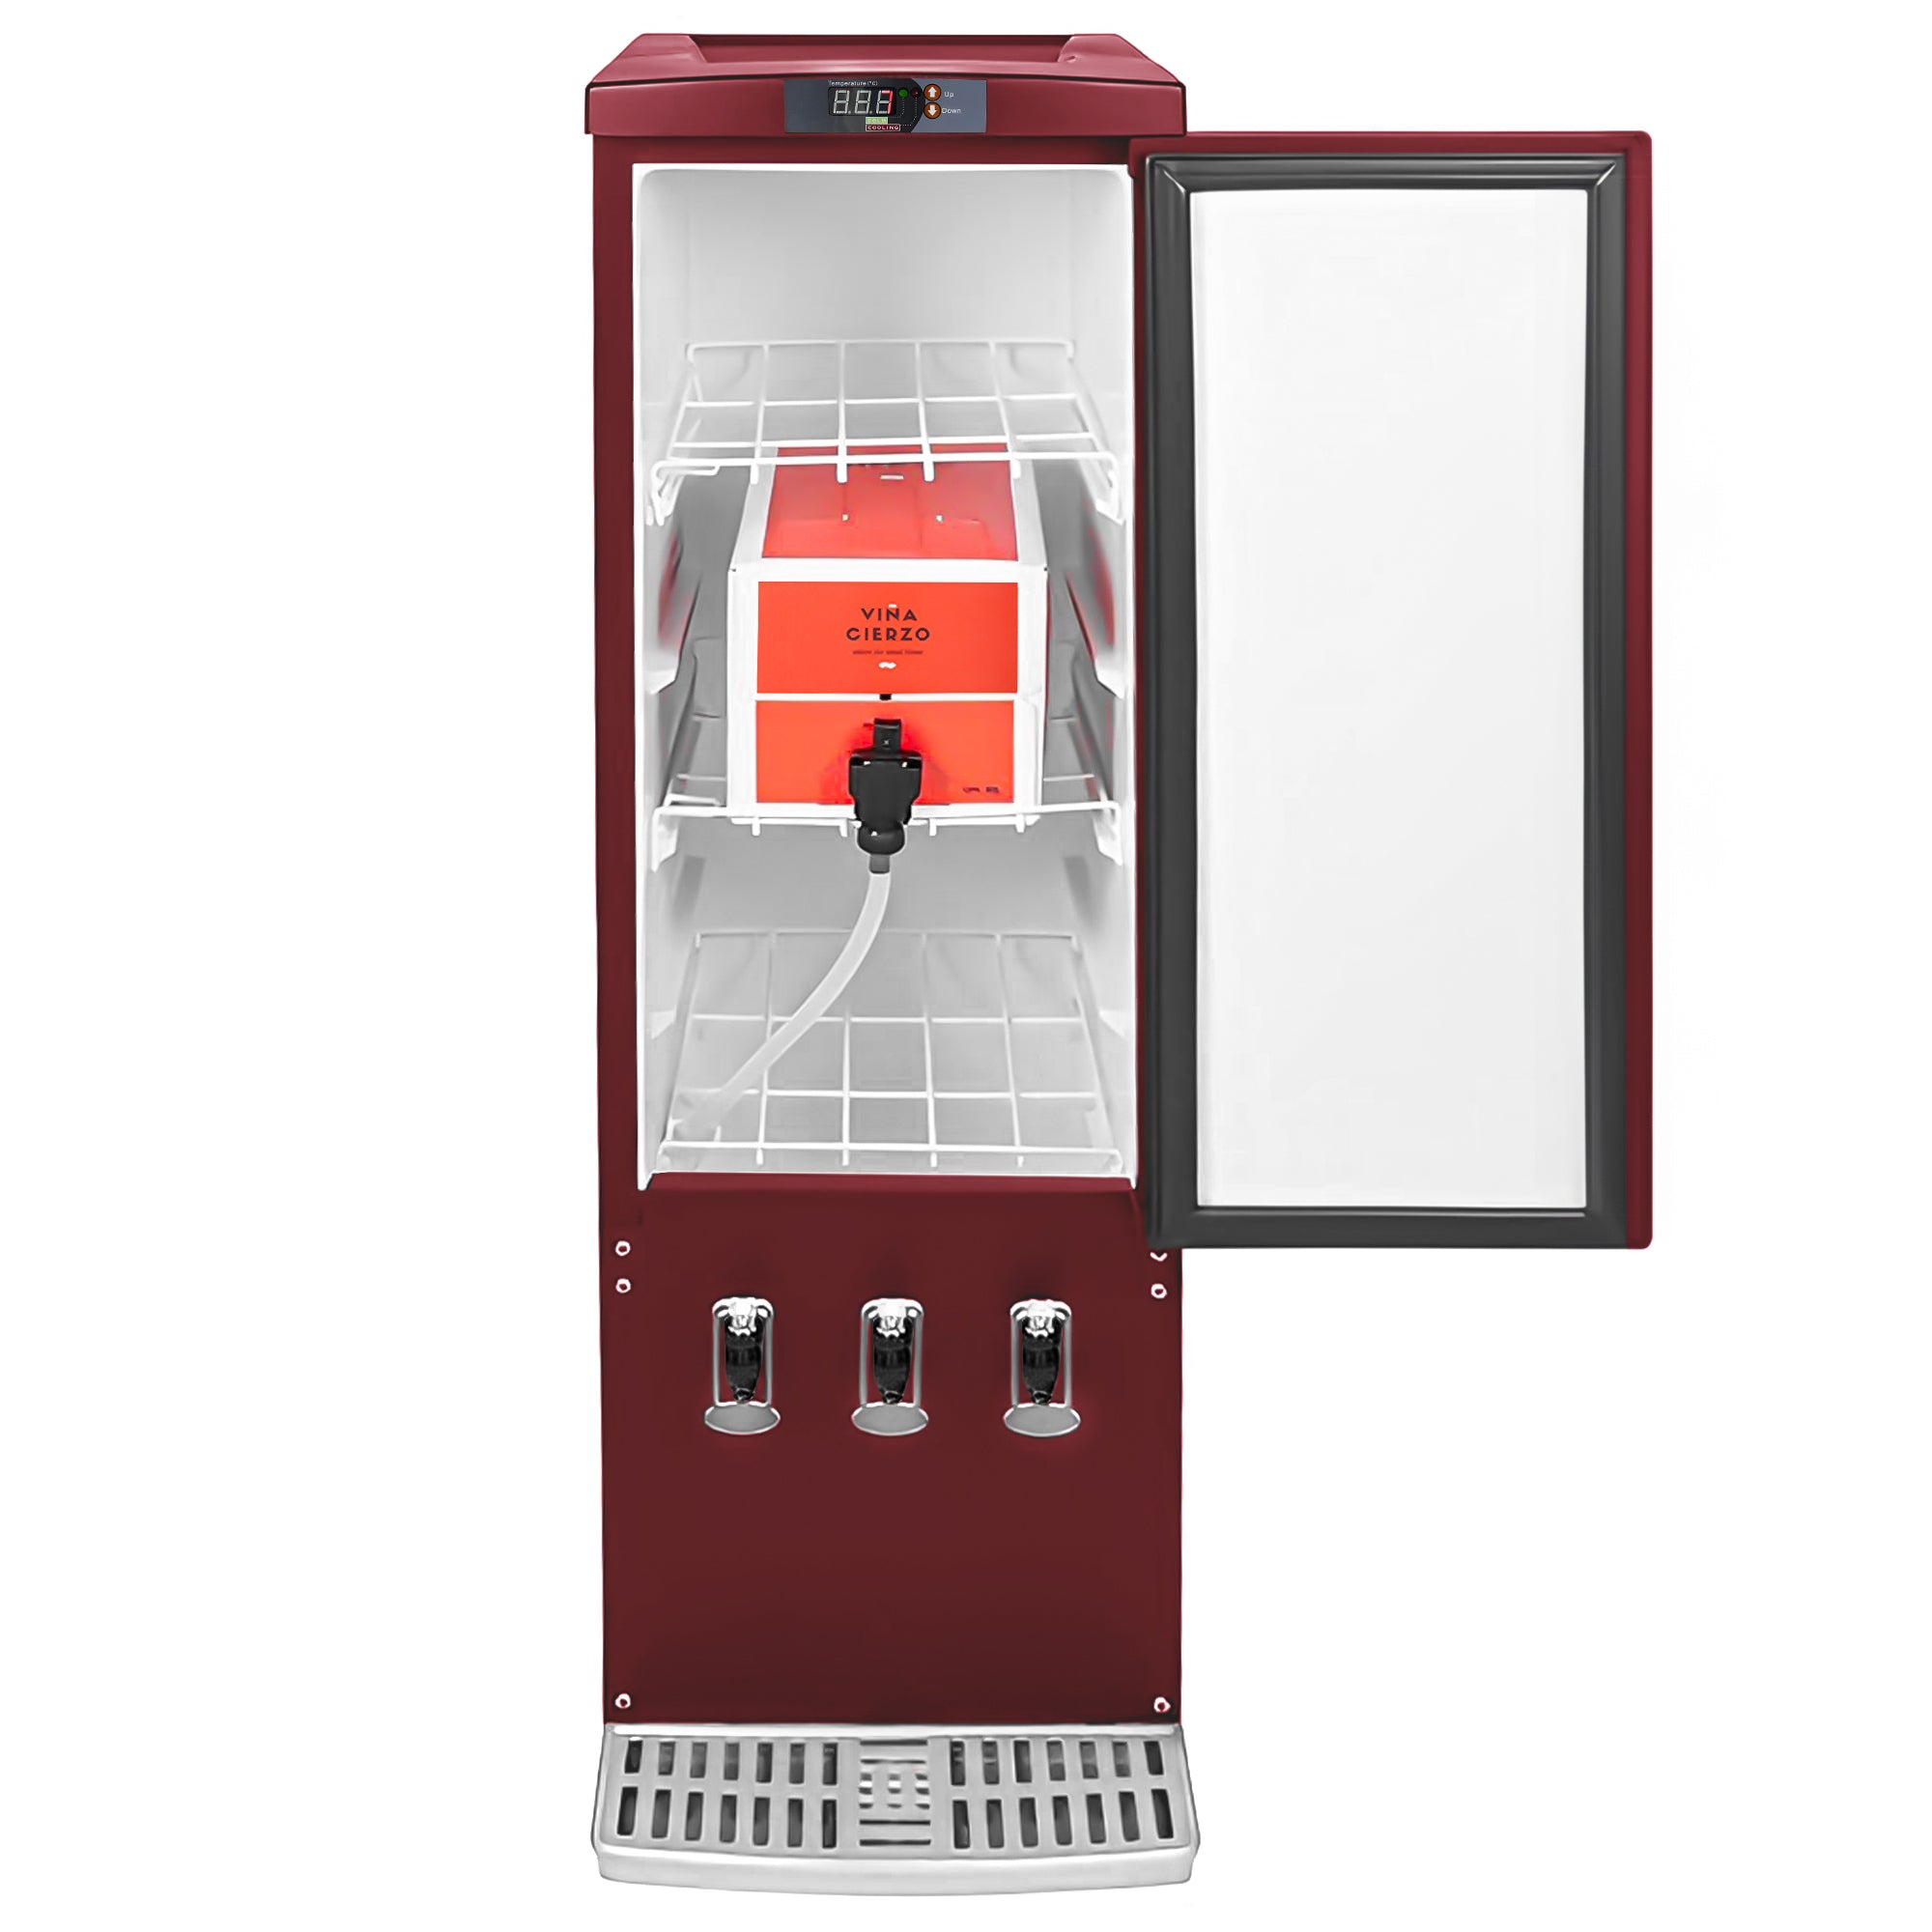 Dispenser-køleskab - 110 liter - vinrød